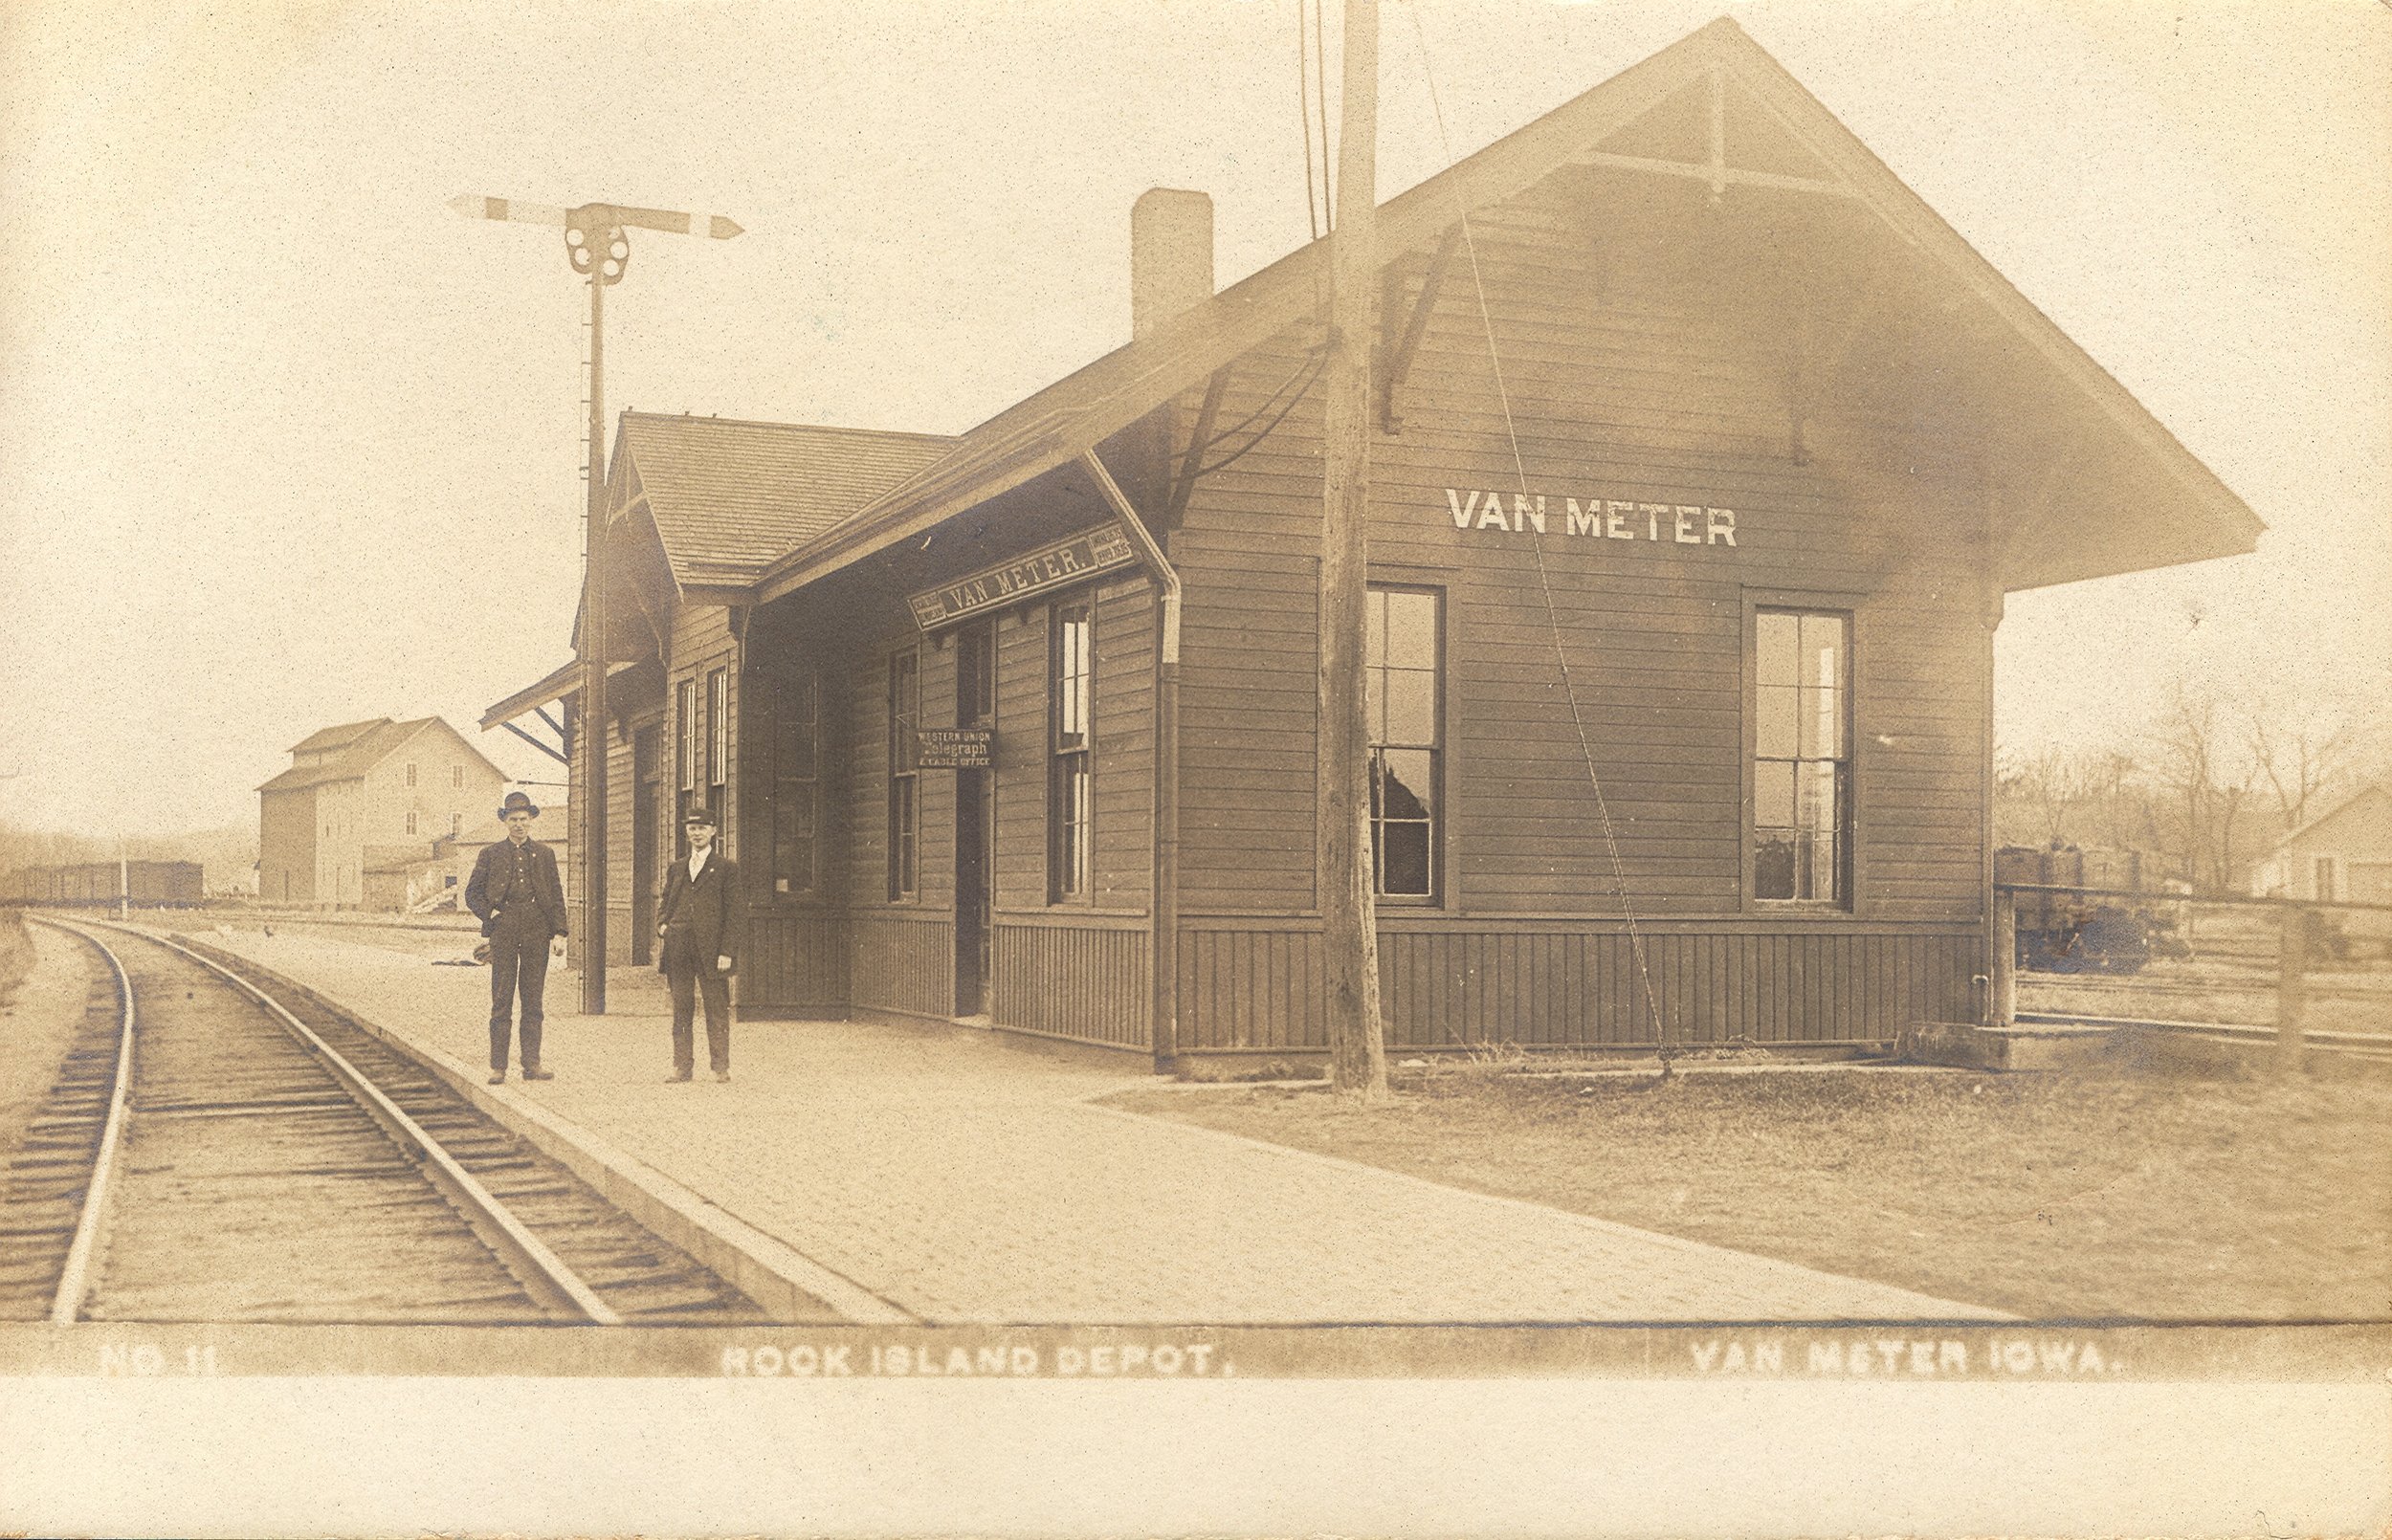  Van Meter’s train station.  Photo from the  City of Van Meter’s website  